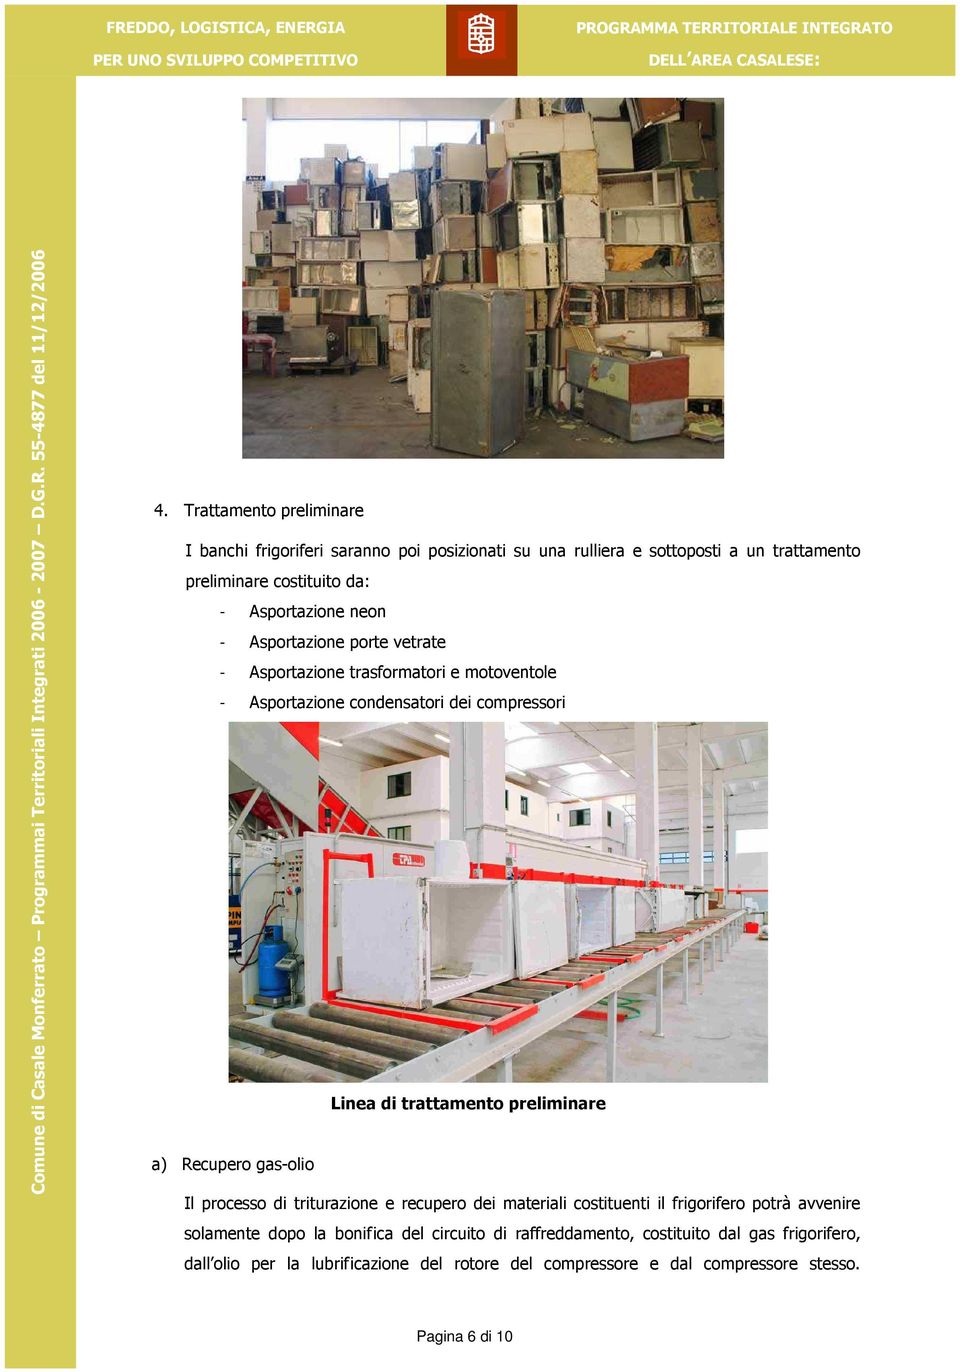 Asportazione porte vetrate - Asportazione trasformatori e motoventole - Asportazione condensatori dei compressori Linea di trattamento preliminare a) Recupero gas-olio